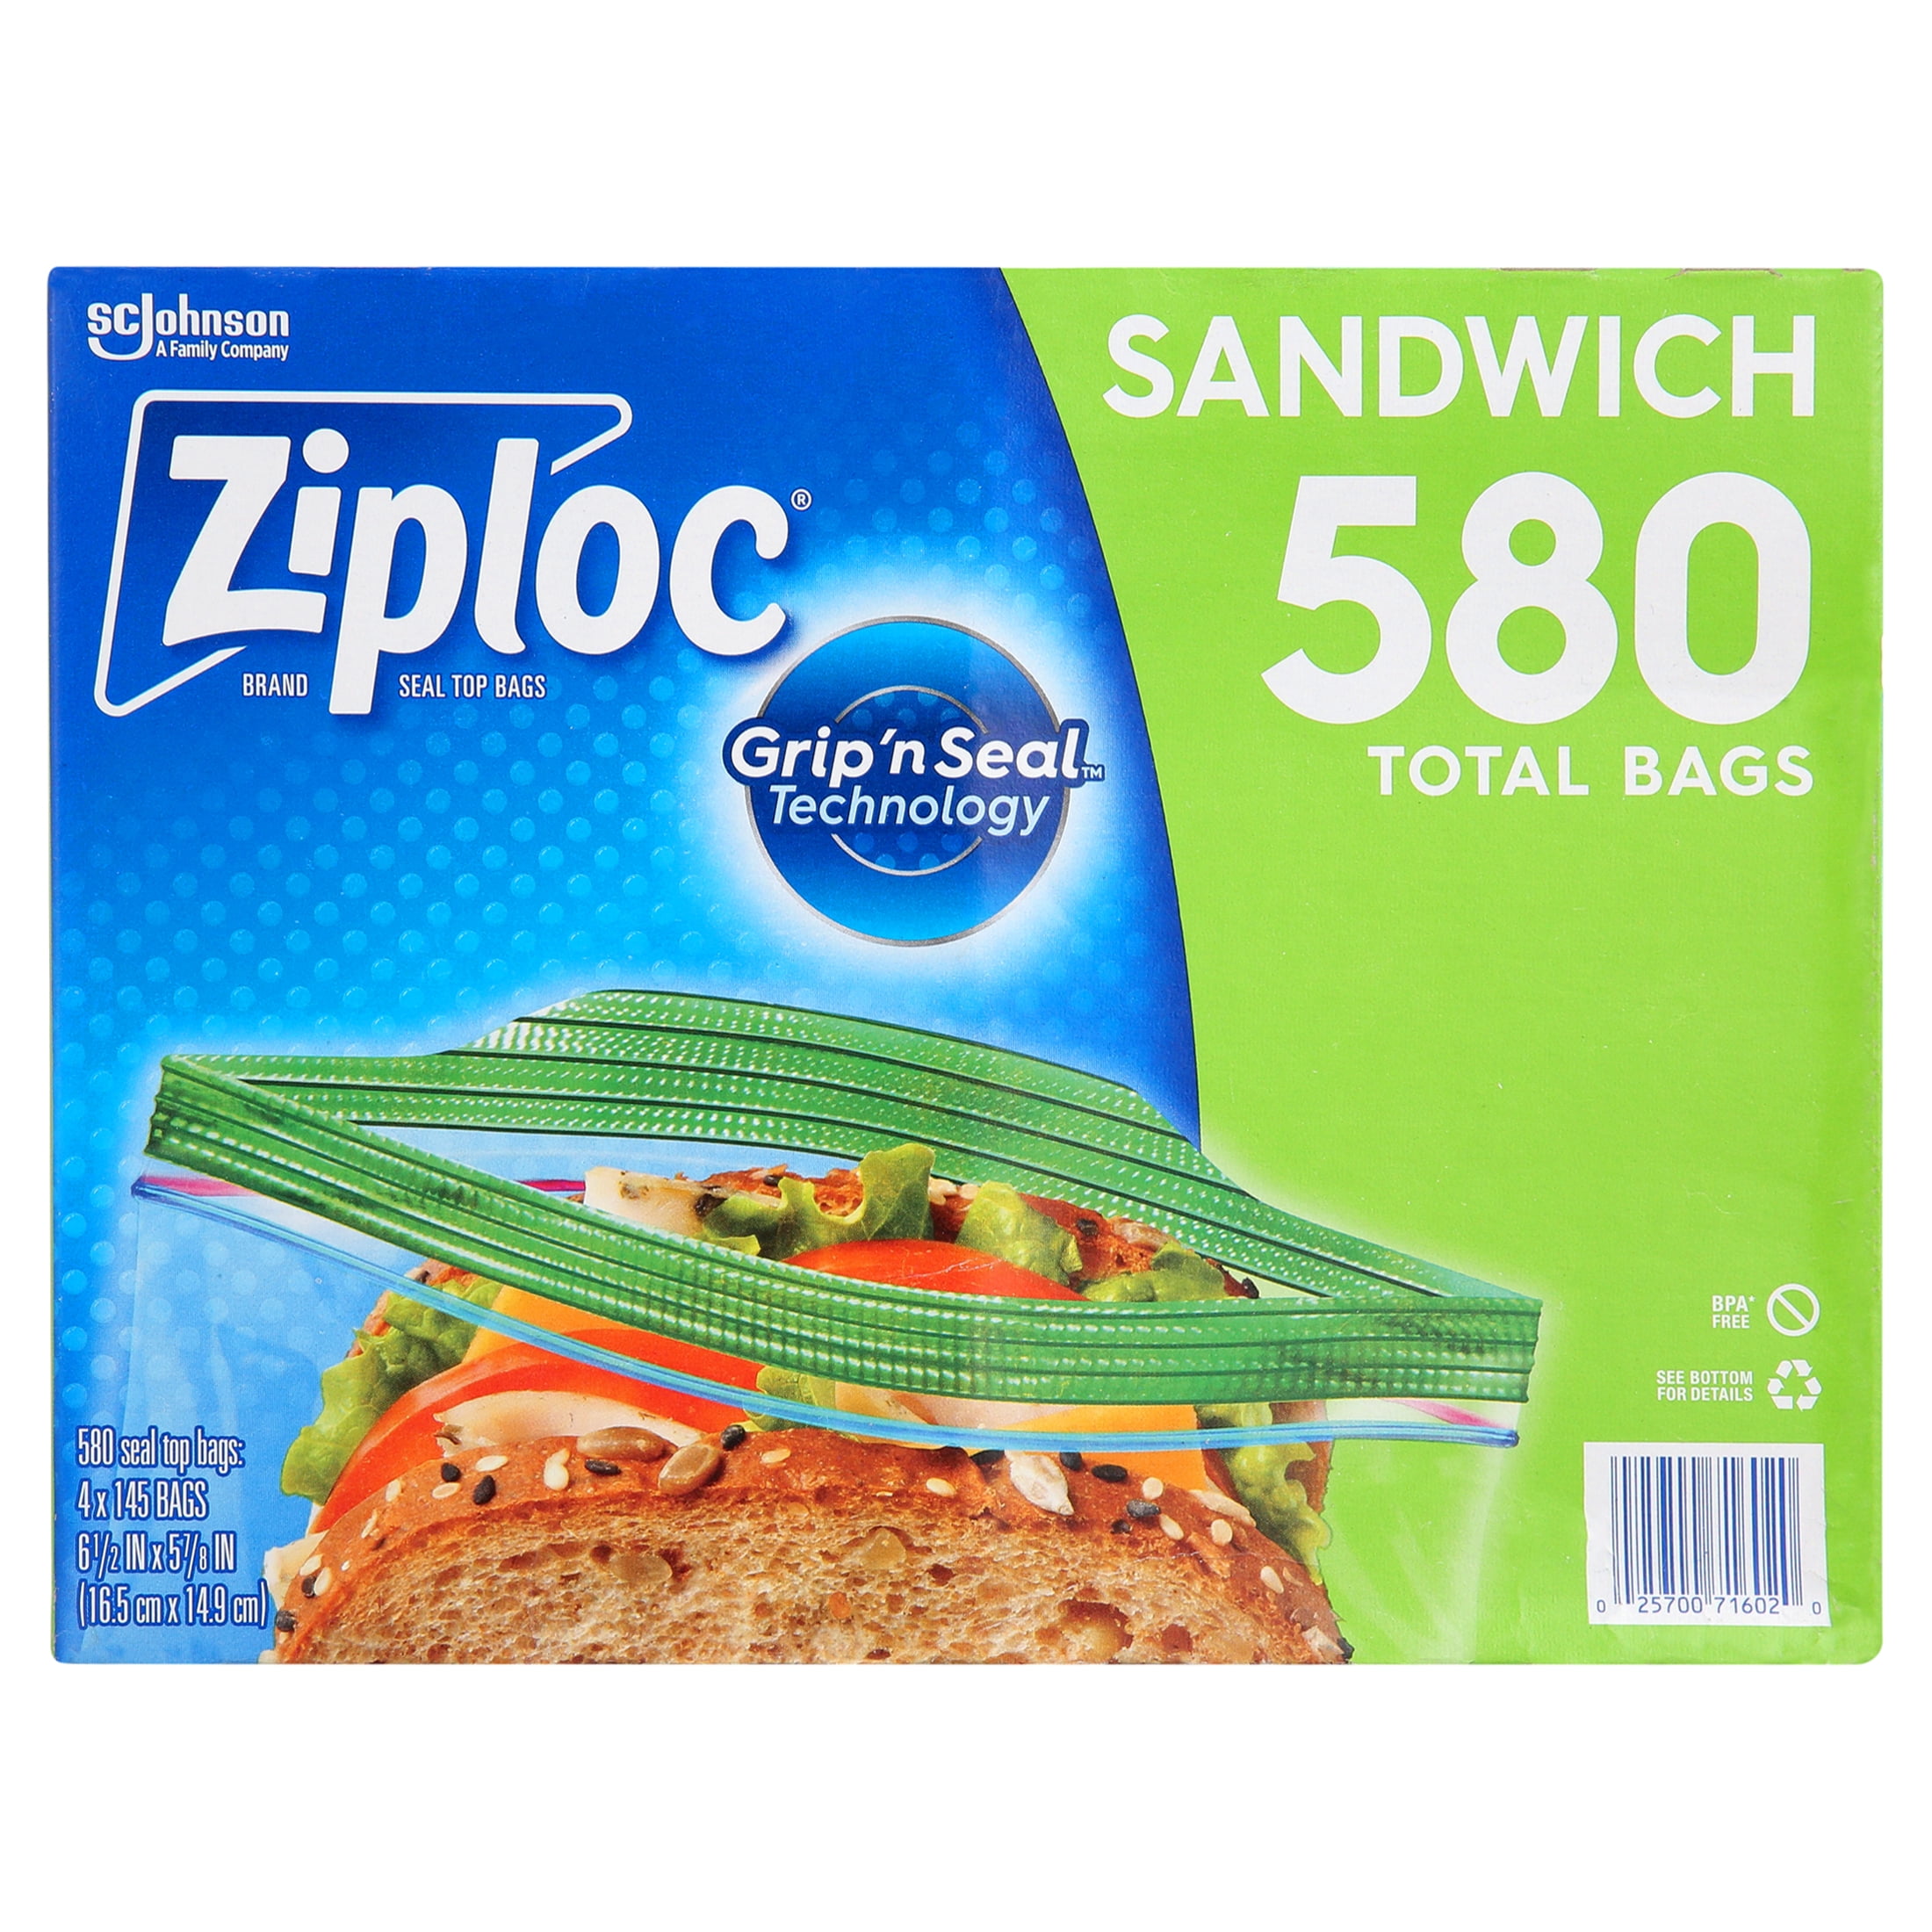 Multix Pk25 Slider Sandwich Bags Reclosable 20cm X 18cm 10 pieces Carton